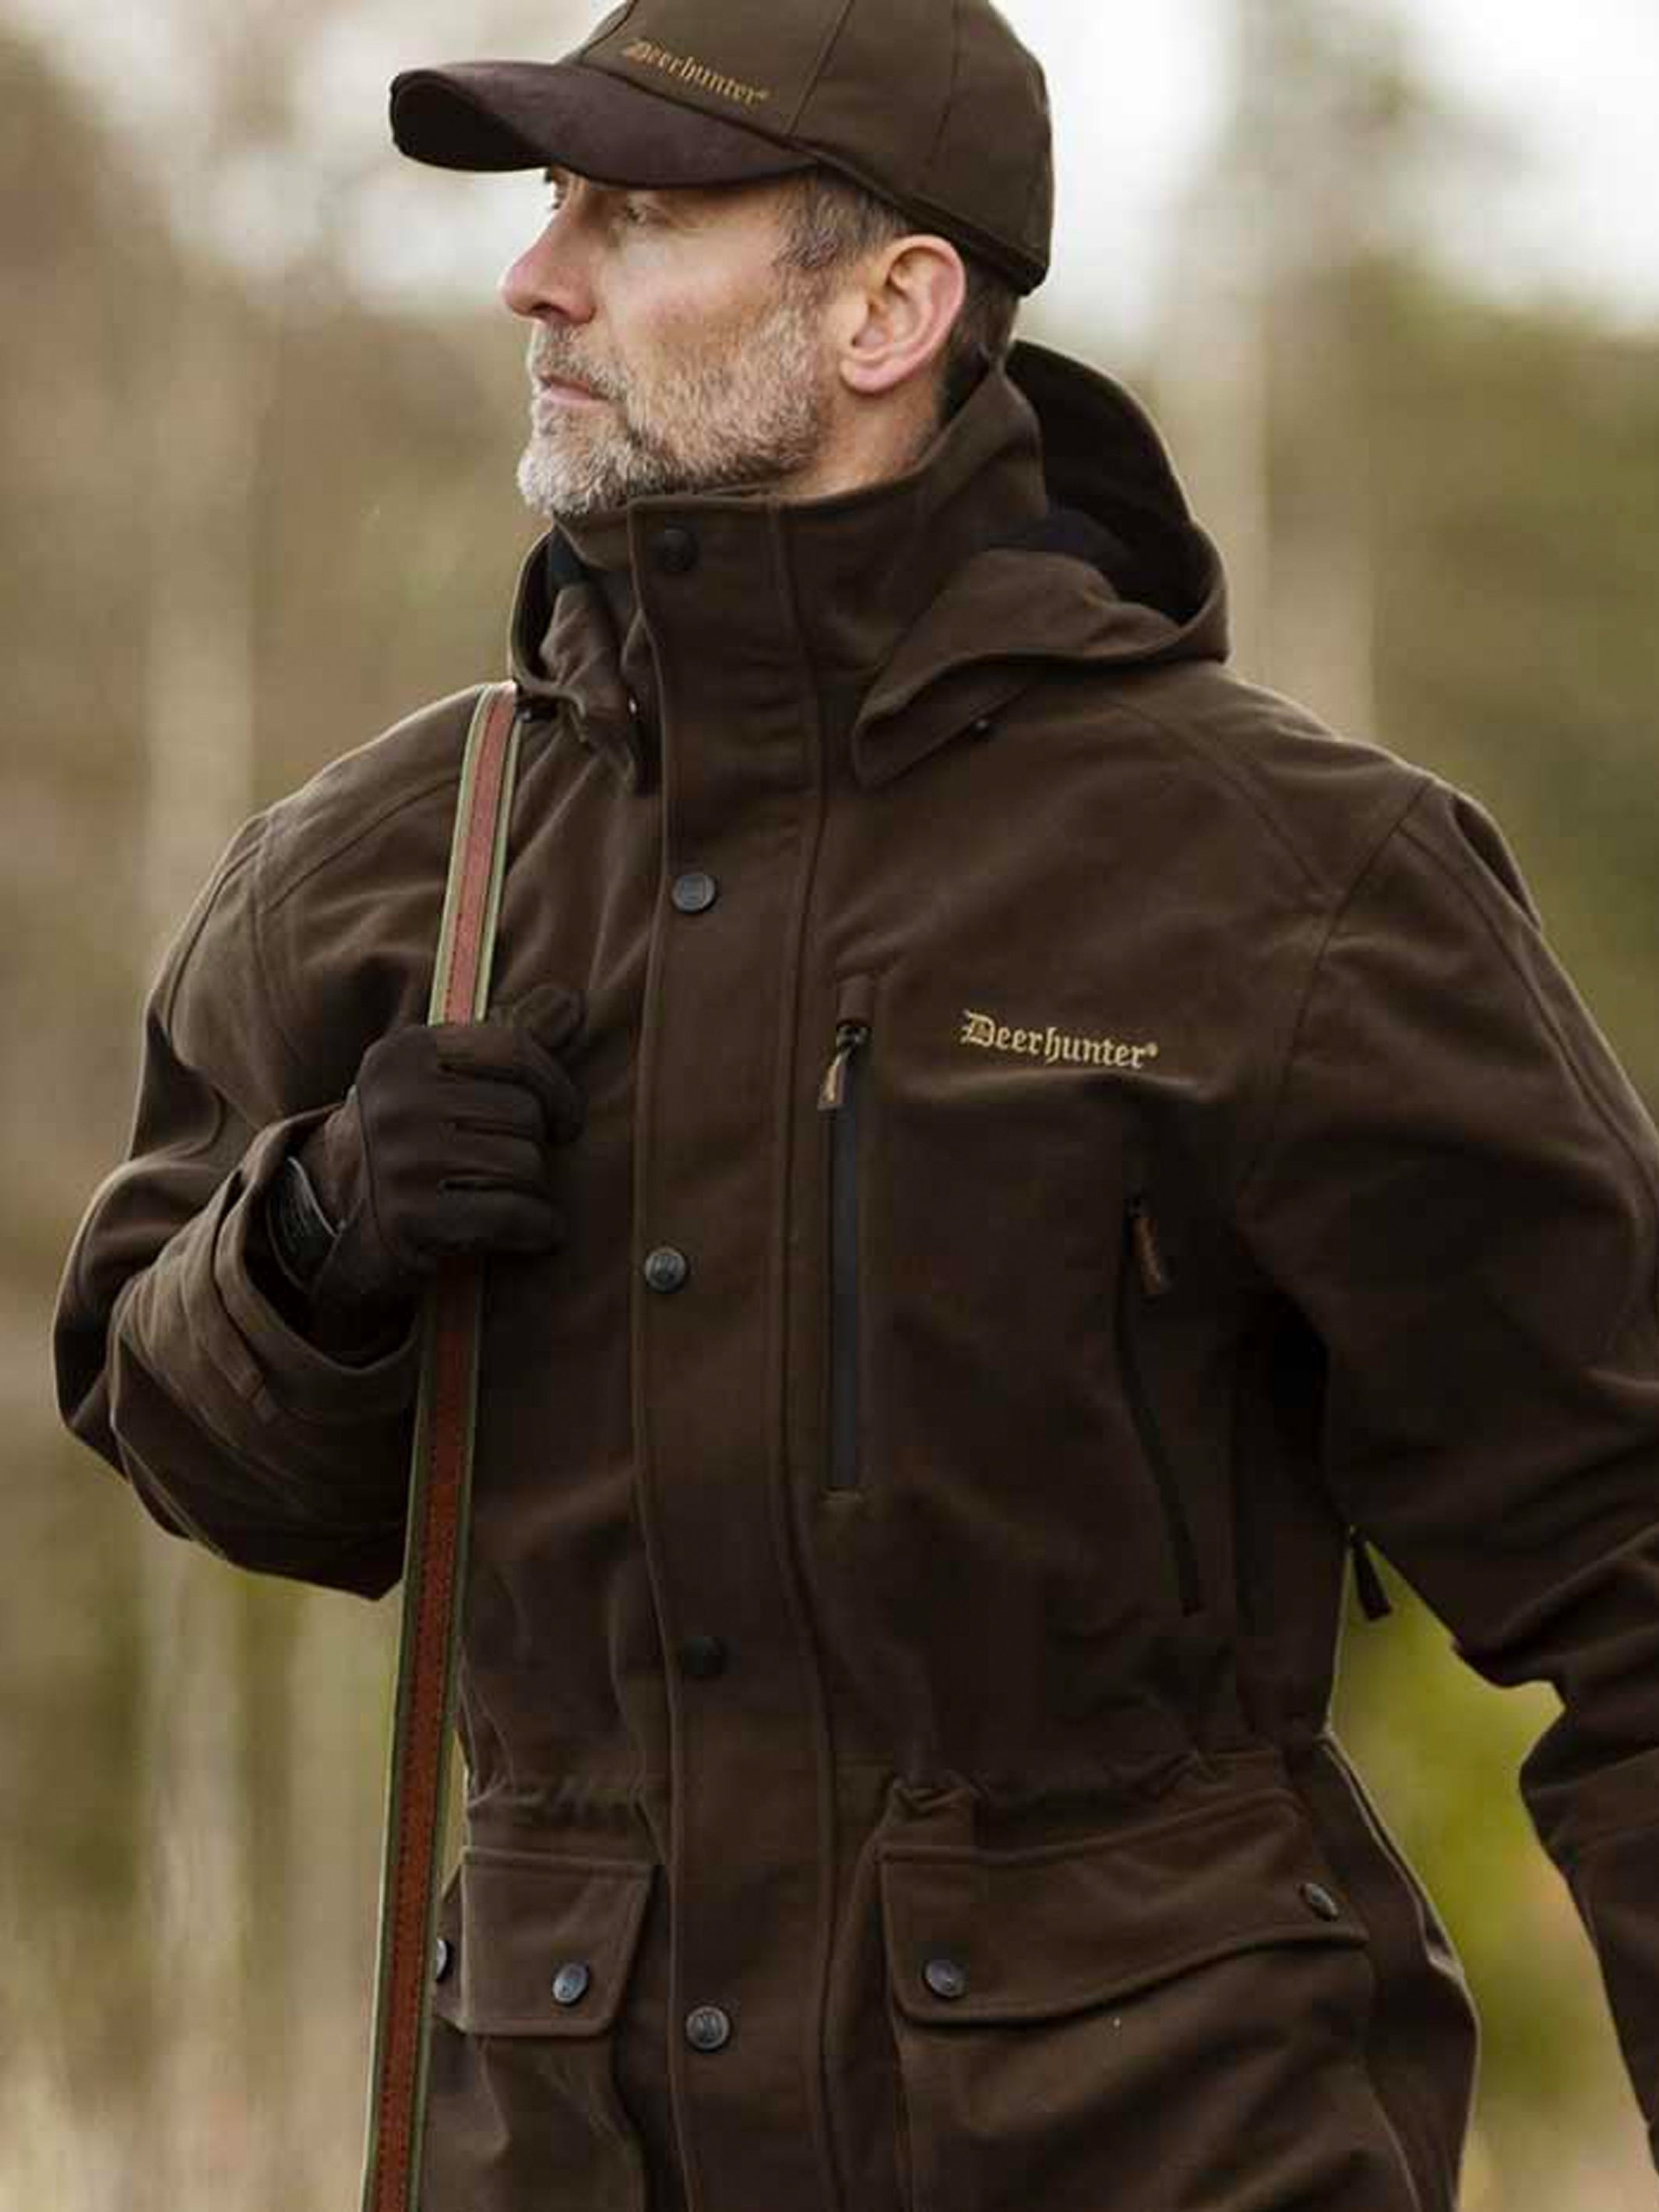 Deerhunter coat gamekeeper pro jacket smock peat with hat